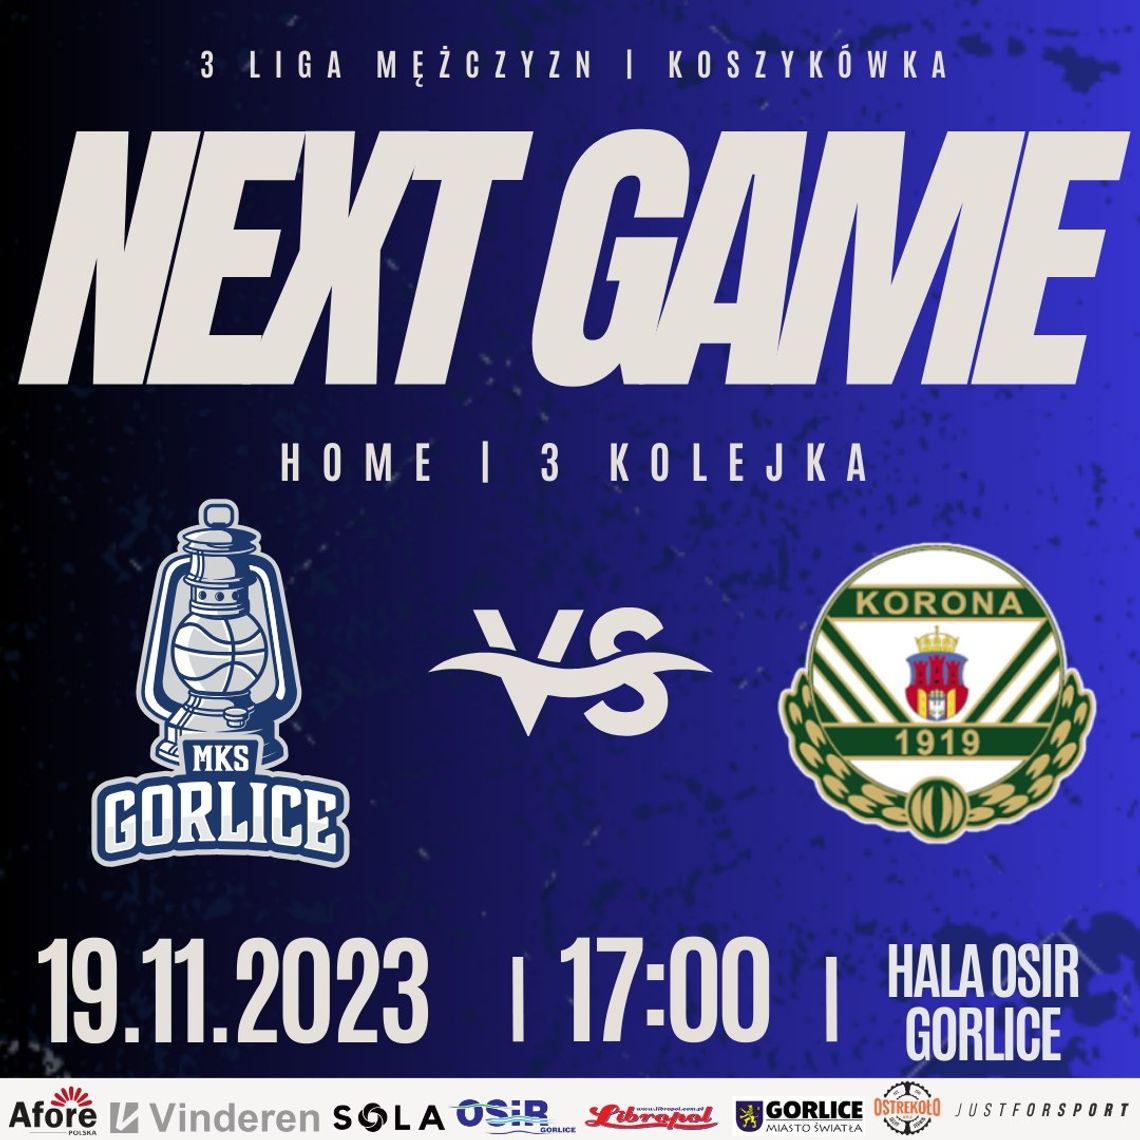 Koszykówka 3 liga mężczyzn MKS Gorlice - KS Korona Kraków | halogorlice.info